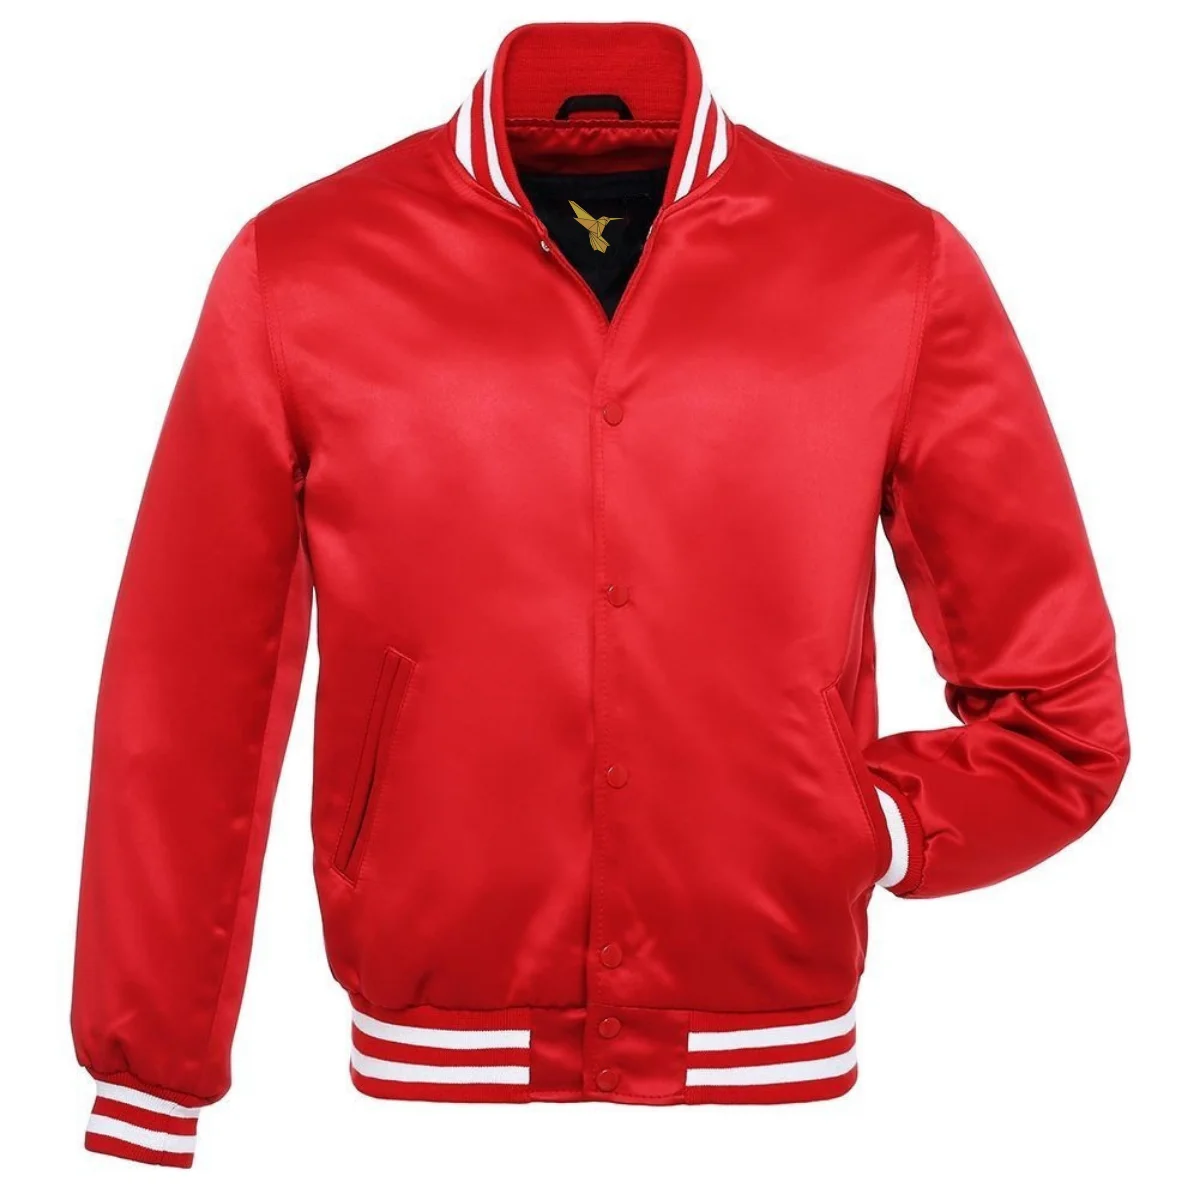 Inner Side Of Red Varsity Jacket